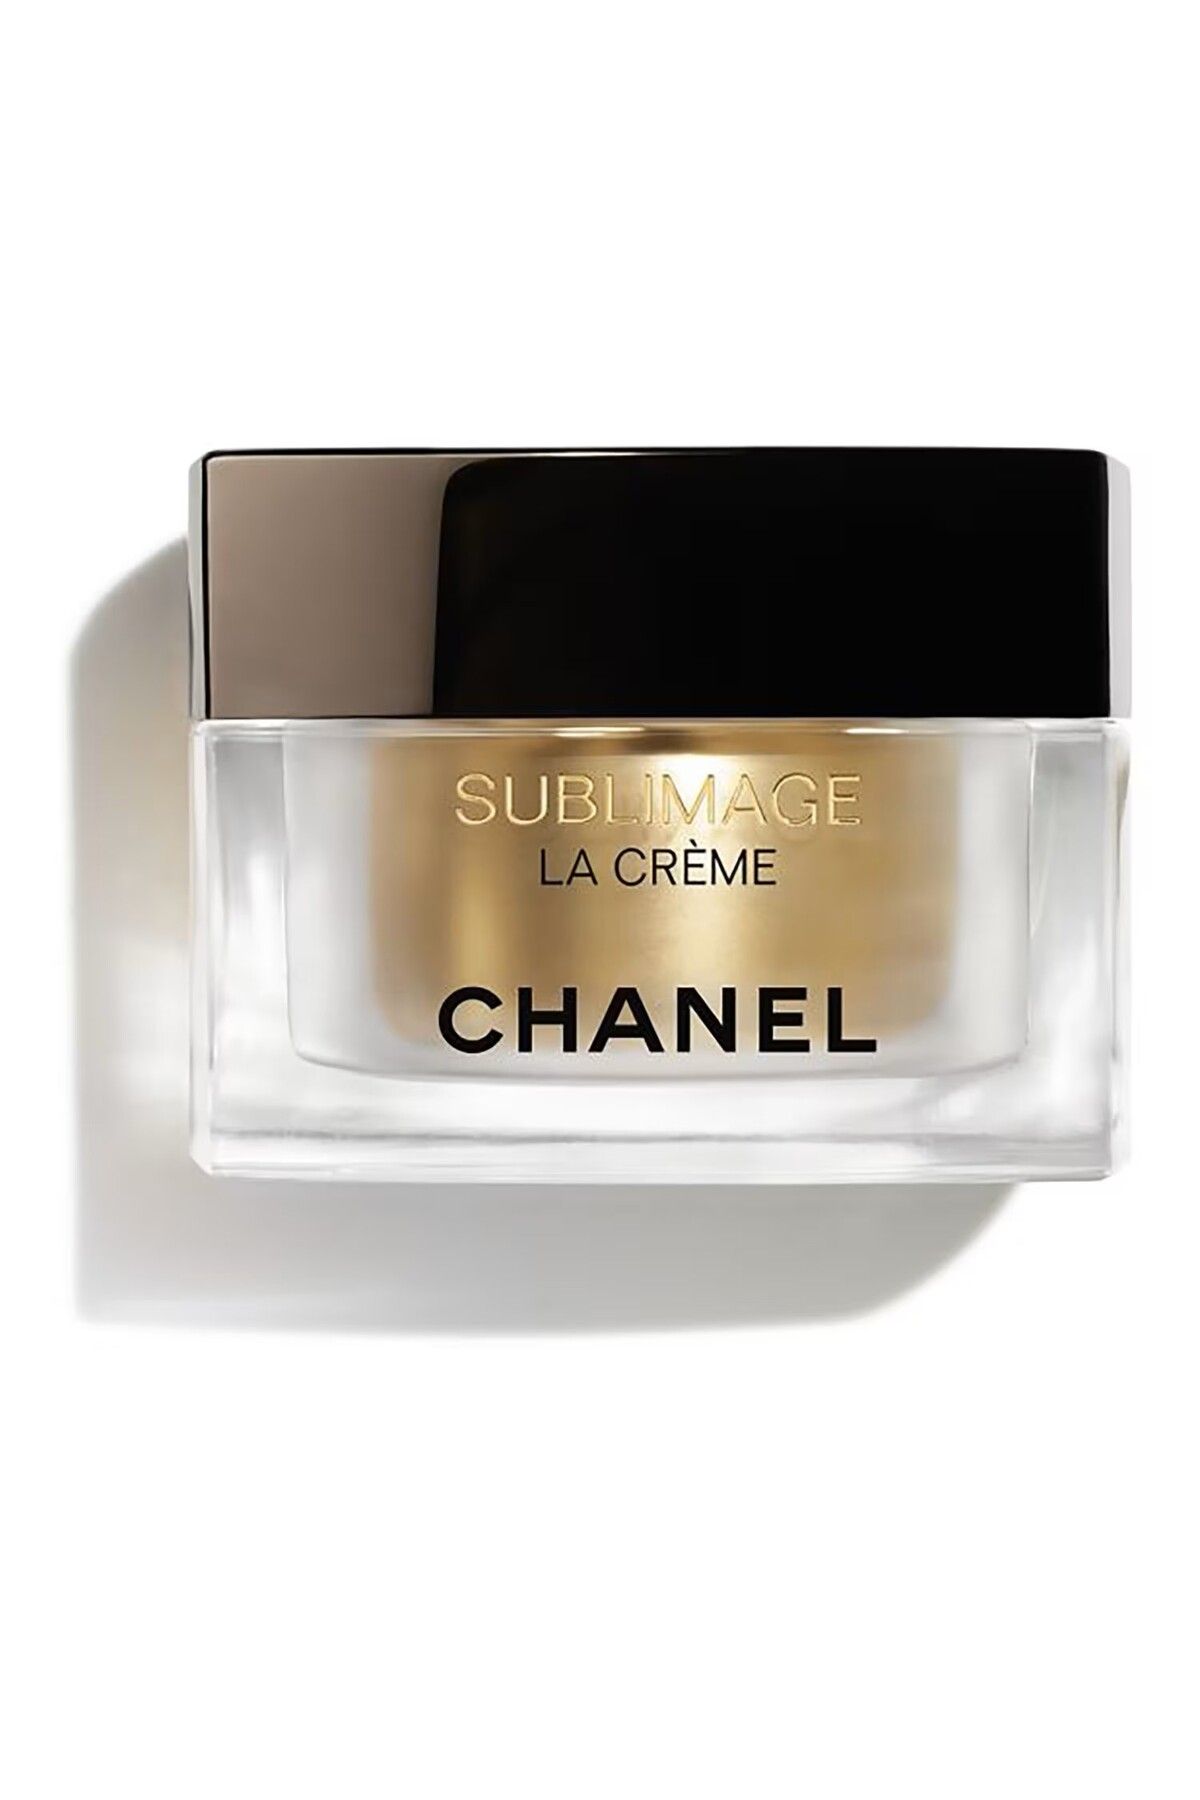 Chanel SUBLIMAGE LA CREME TEXTURE SUPREME-Kırışıklık Karşıtı Parlaklık Verici Nemlendirici Krem 50g